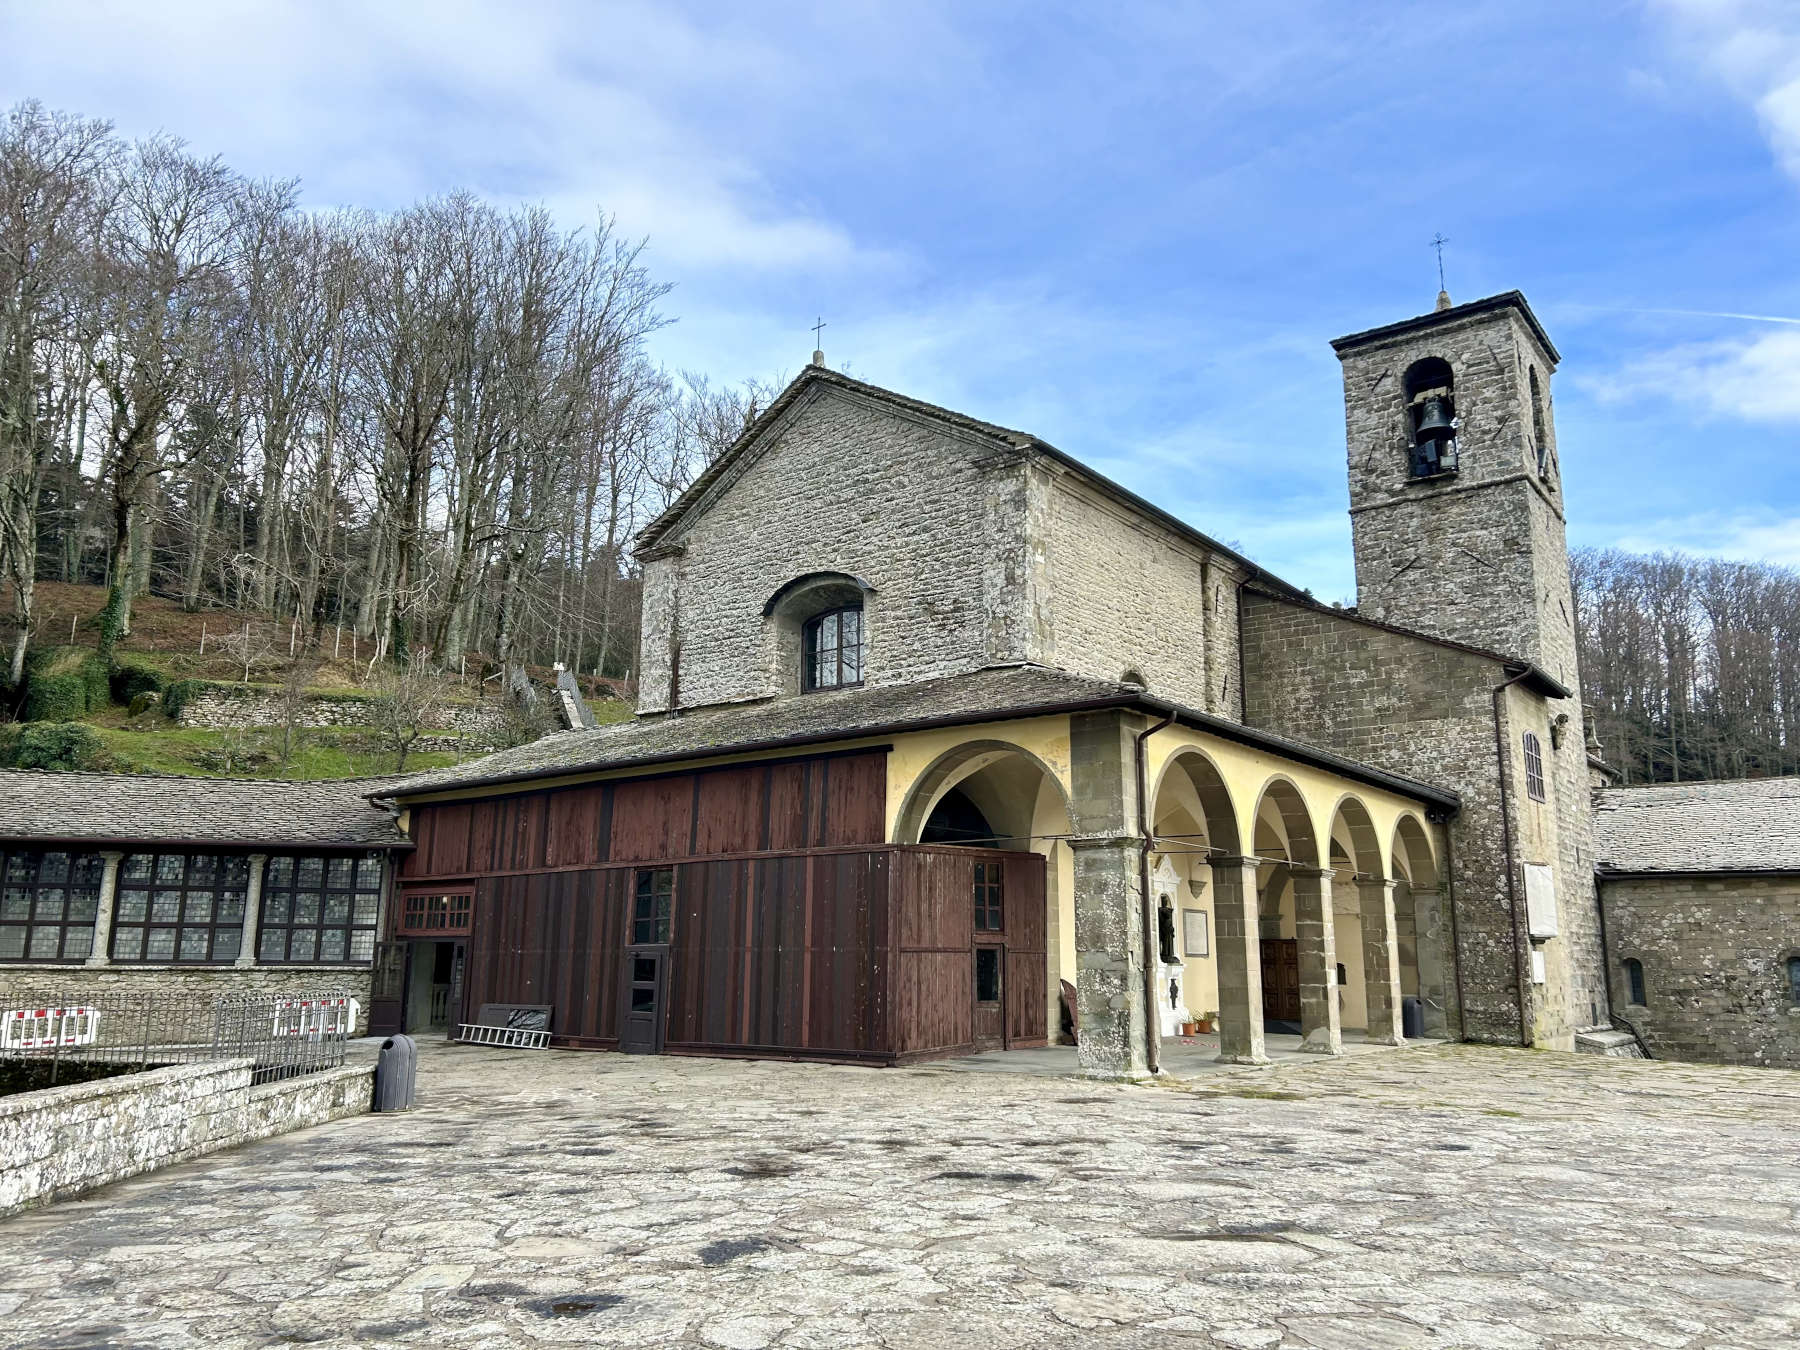 The Sanctuary of La Verna in Chiusi della Verna